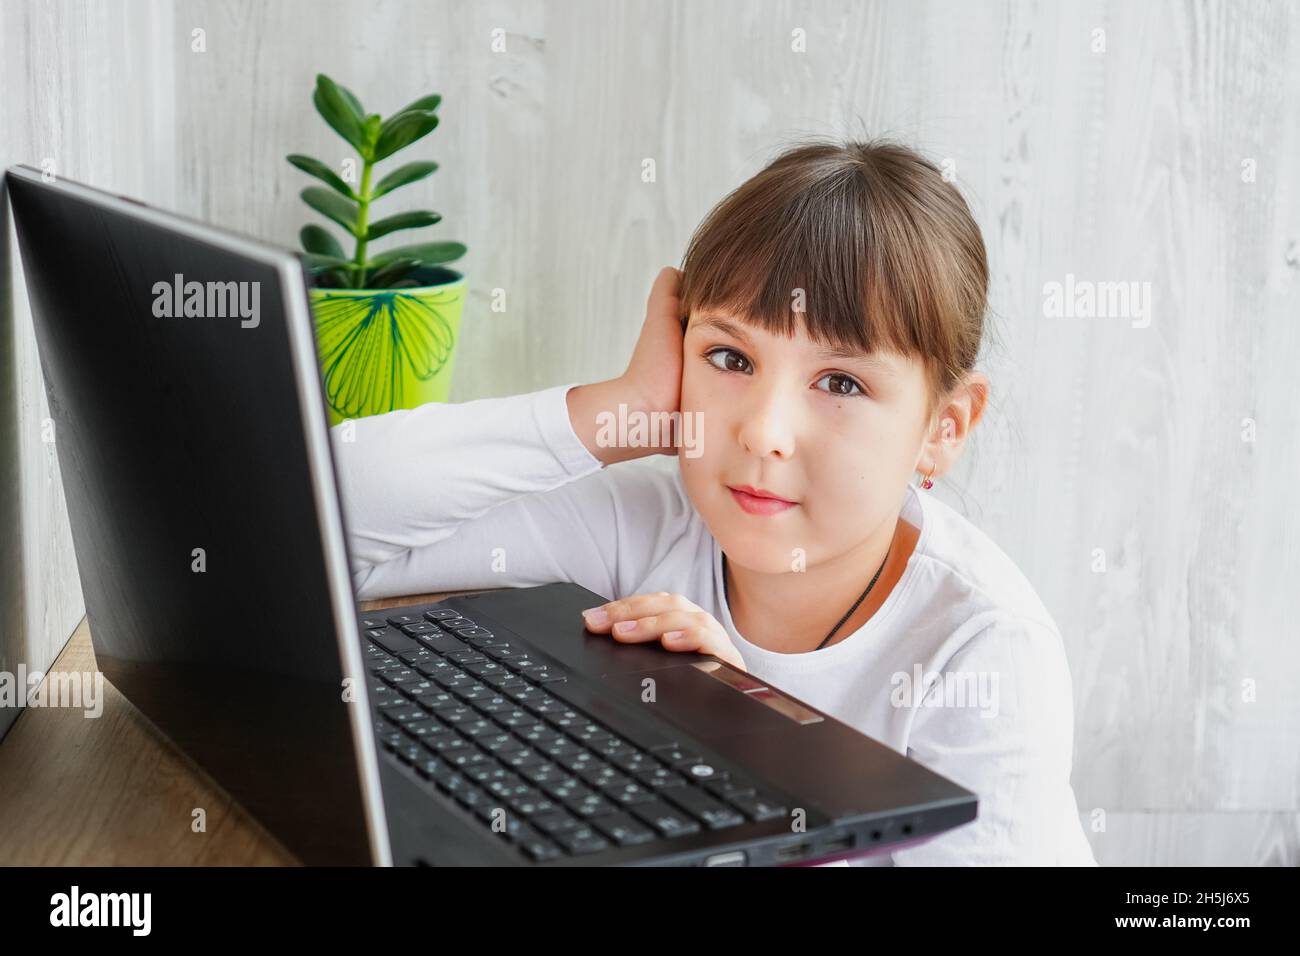 Innenaufnahme eines niedlichen dunkelhaarigen weiblichen Kindes, das am Tisch neben dem Notebook sitzt und die Kamera mit einer Hand im Gesicht betrachtet Stockfoto